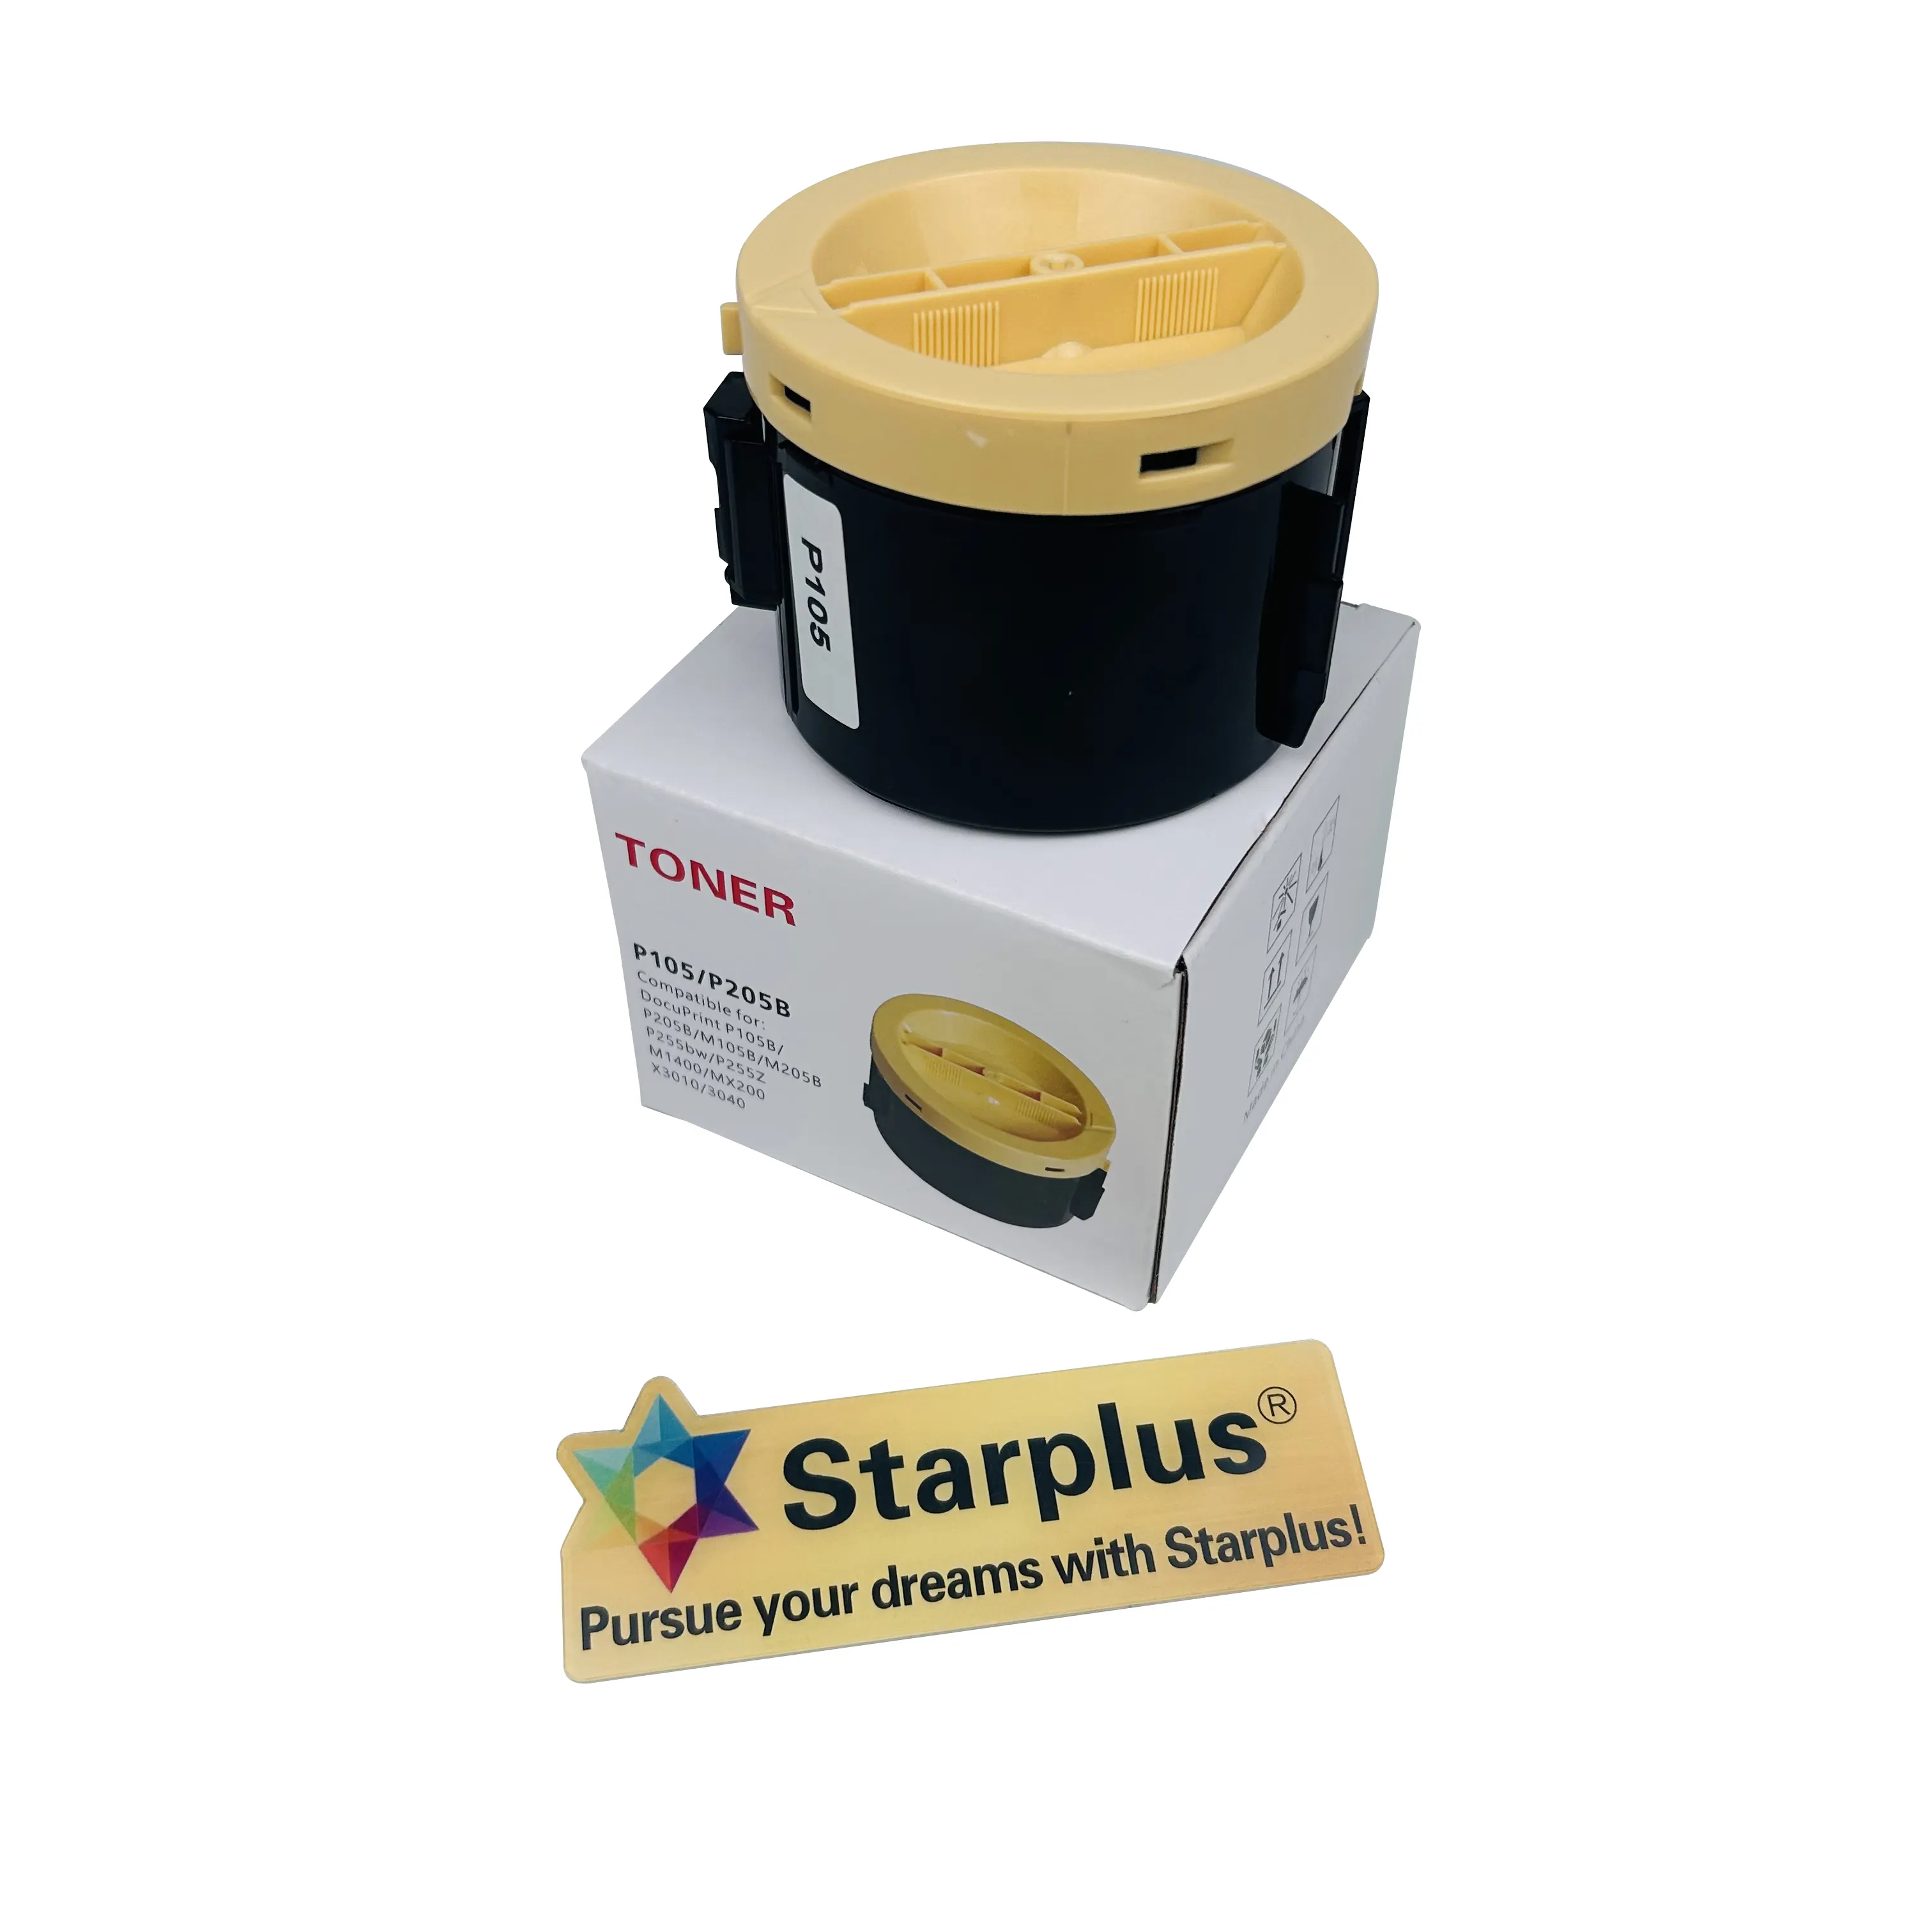 Starplus sıcak satış Toner kartuşu için Xerox DocuPrint P105B P205B M105B M205B P255bw P255Z M1400 MX200 X3010 3040